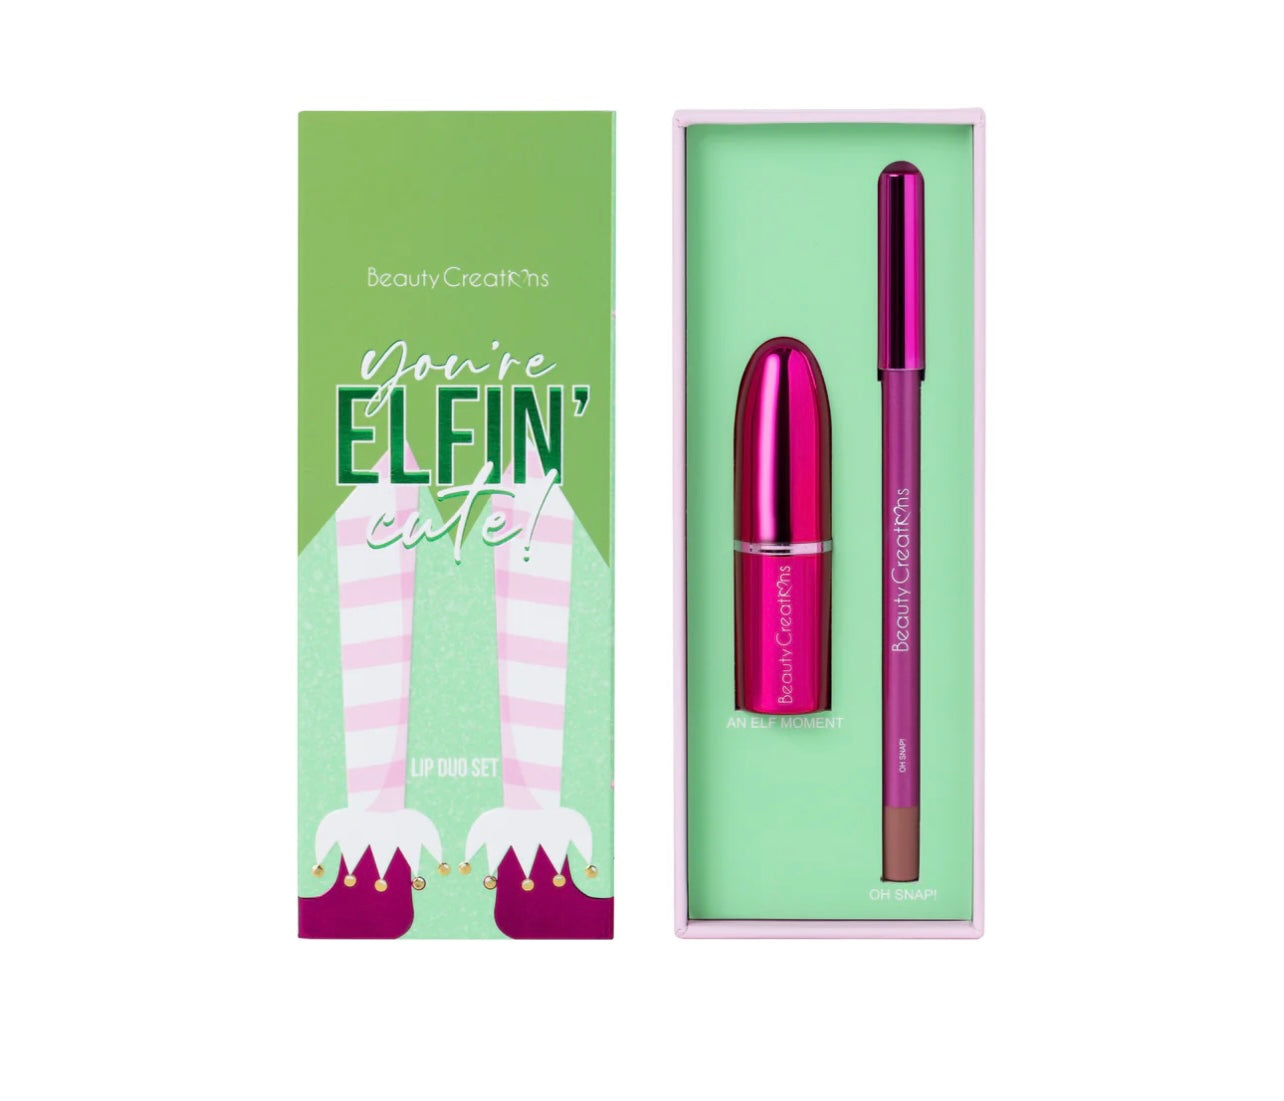 ElFIE LIP DUOS - You’re Elfin’ Cute